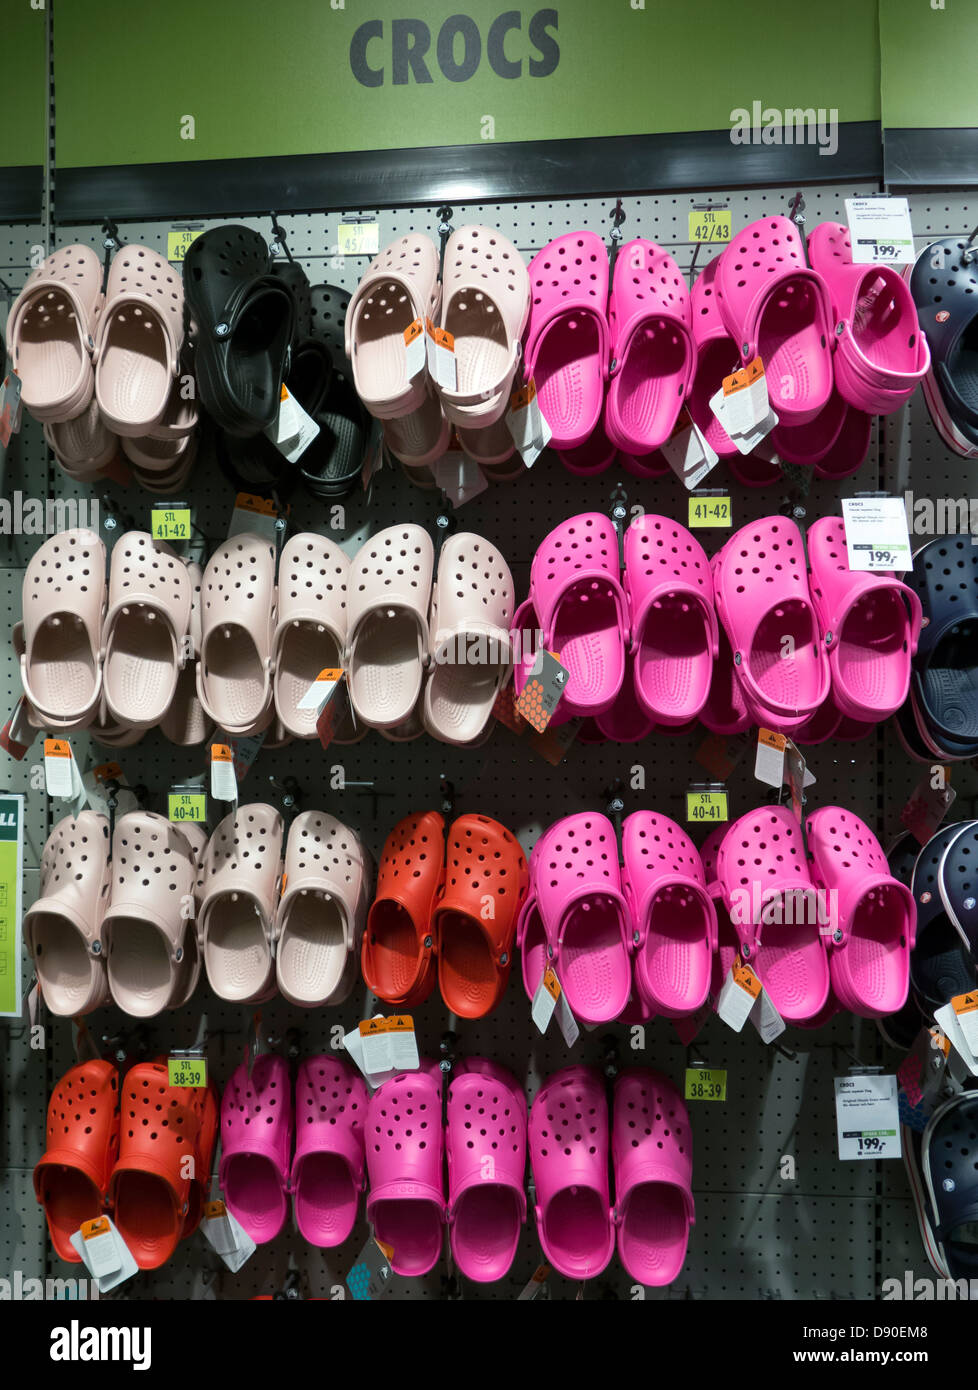 Chaussures Crocs sur stand dans un magasin de chaussures Photo Stock - Alamy